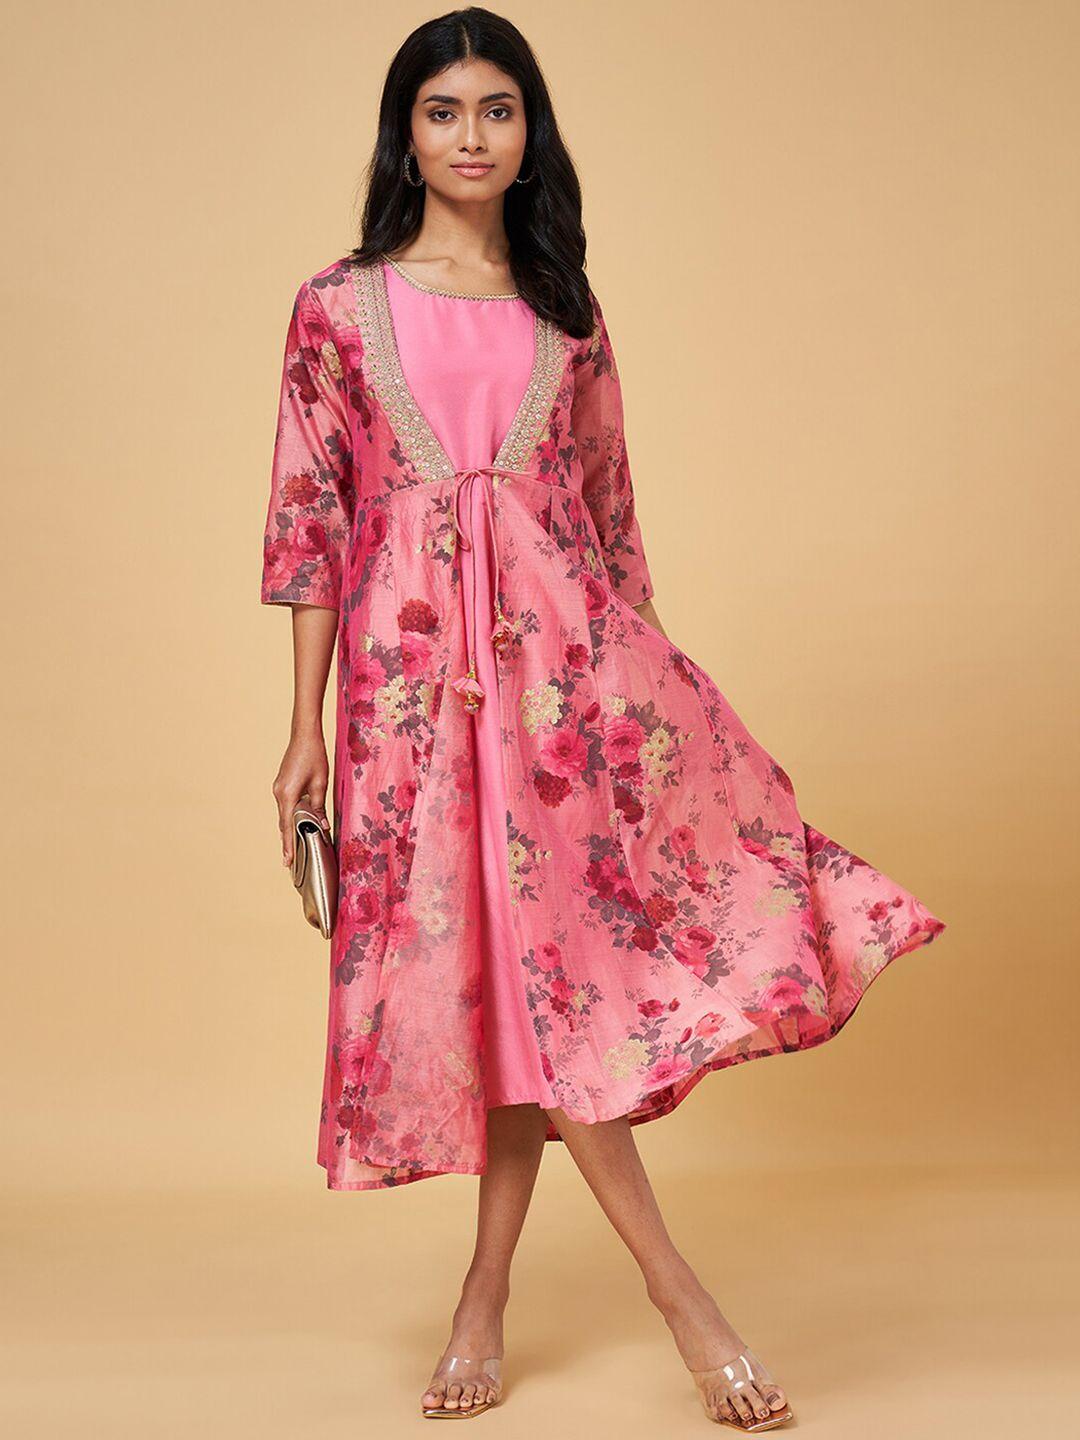 rangmanch-by-pantaloons-pink-floral-print-a-line-midi-dress